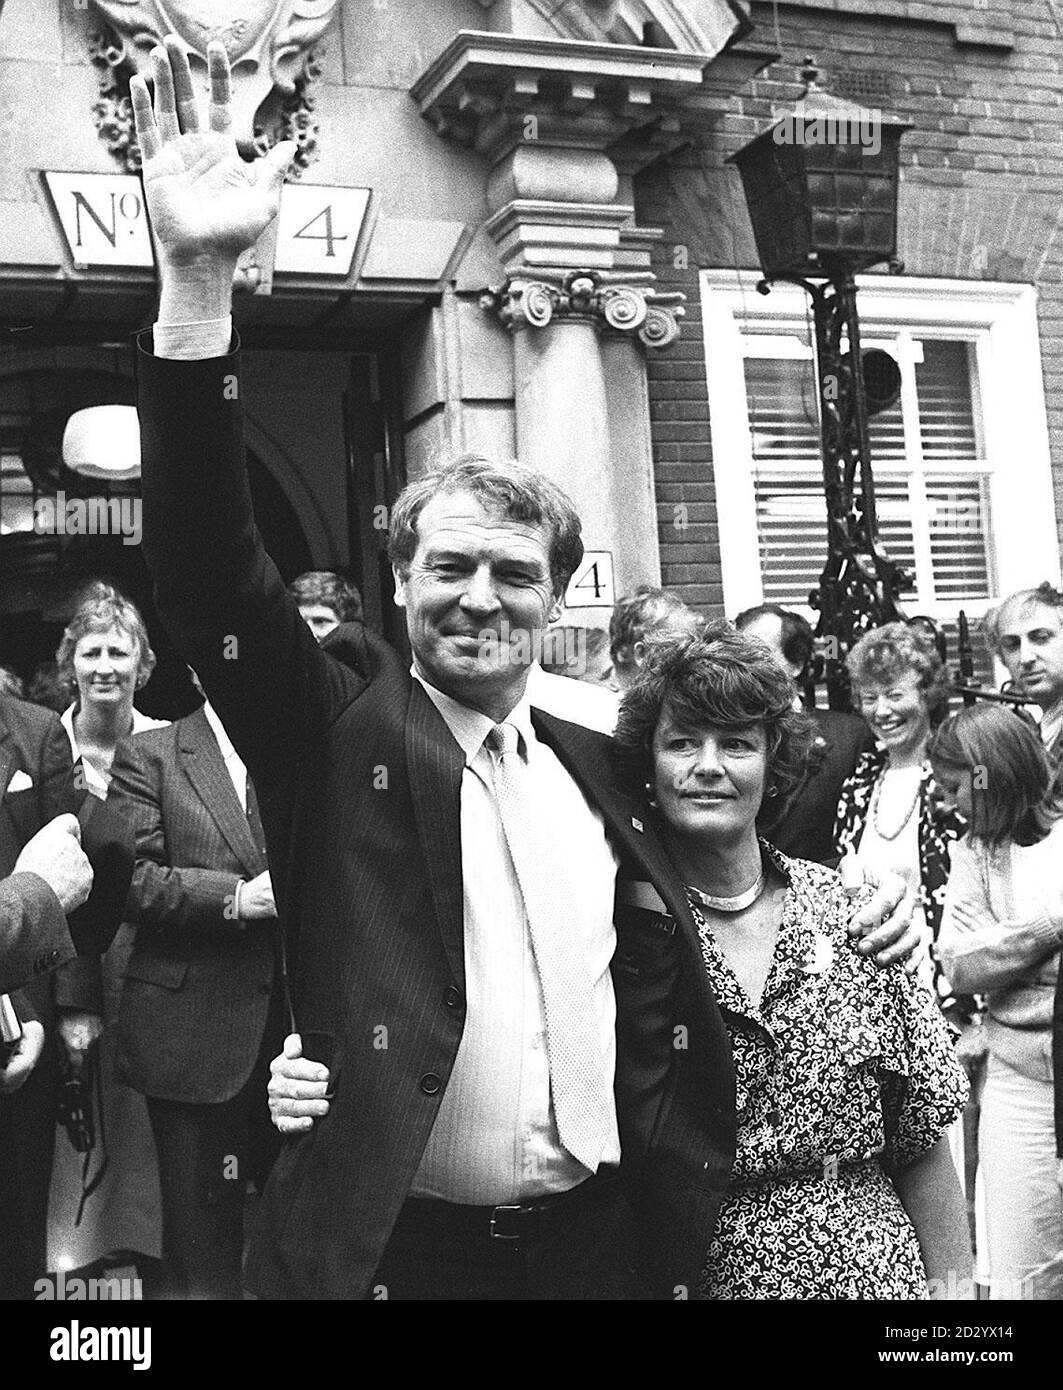 28th DE JULIO: En este día de 1988 Paddy Ashdown, el diputado de Yeovil fue elegido líder del nuevo Partido Democrático Social y Liberal. Se le ve aquí celebrando con su esposa Jane. Paddy Ashdown y su esposa Jane celebran fuera de las oficinas de los socialdemócratas y liberales demócratas en Londres después de que fuera elegido líder del nuevo partido. 22/7/98: 10th aniversario como líder. 20/1/99: Ashdown se parará como líder en junio de 1999. * Después de las elecciones europeas y como diputado por Yeovil en las próximas elecciones generales. Foto de stock